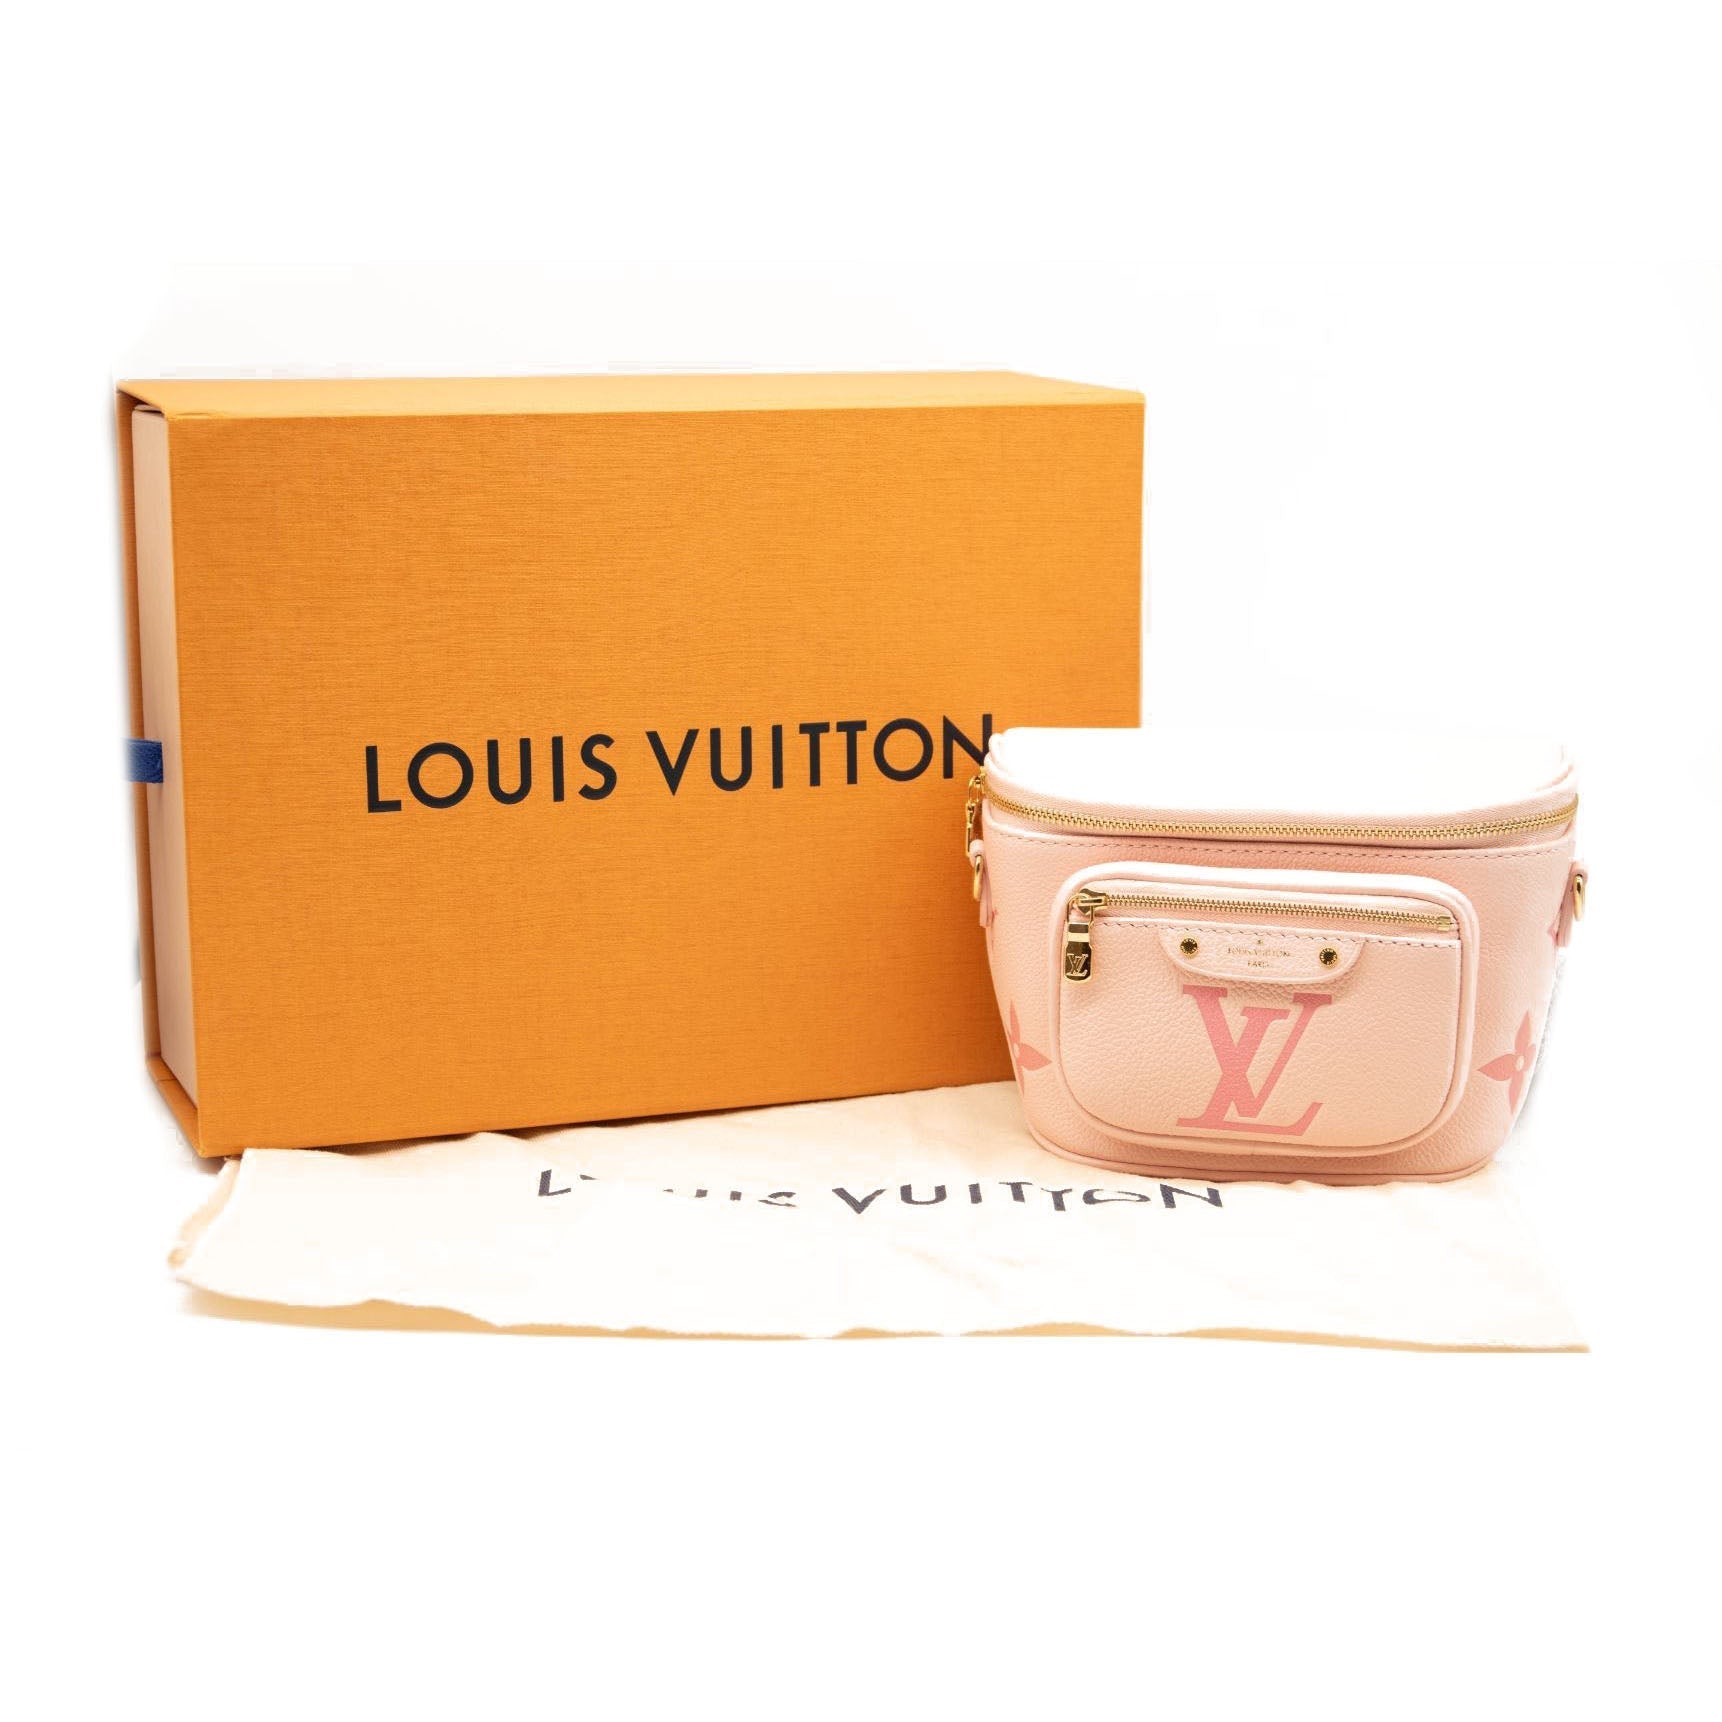 LOUIS VUITTON store bag, box, dust bag and authentication envelope